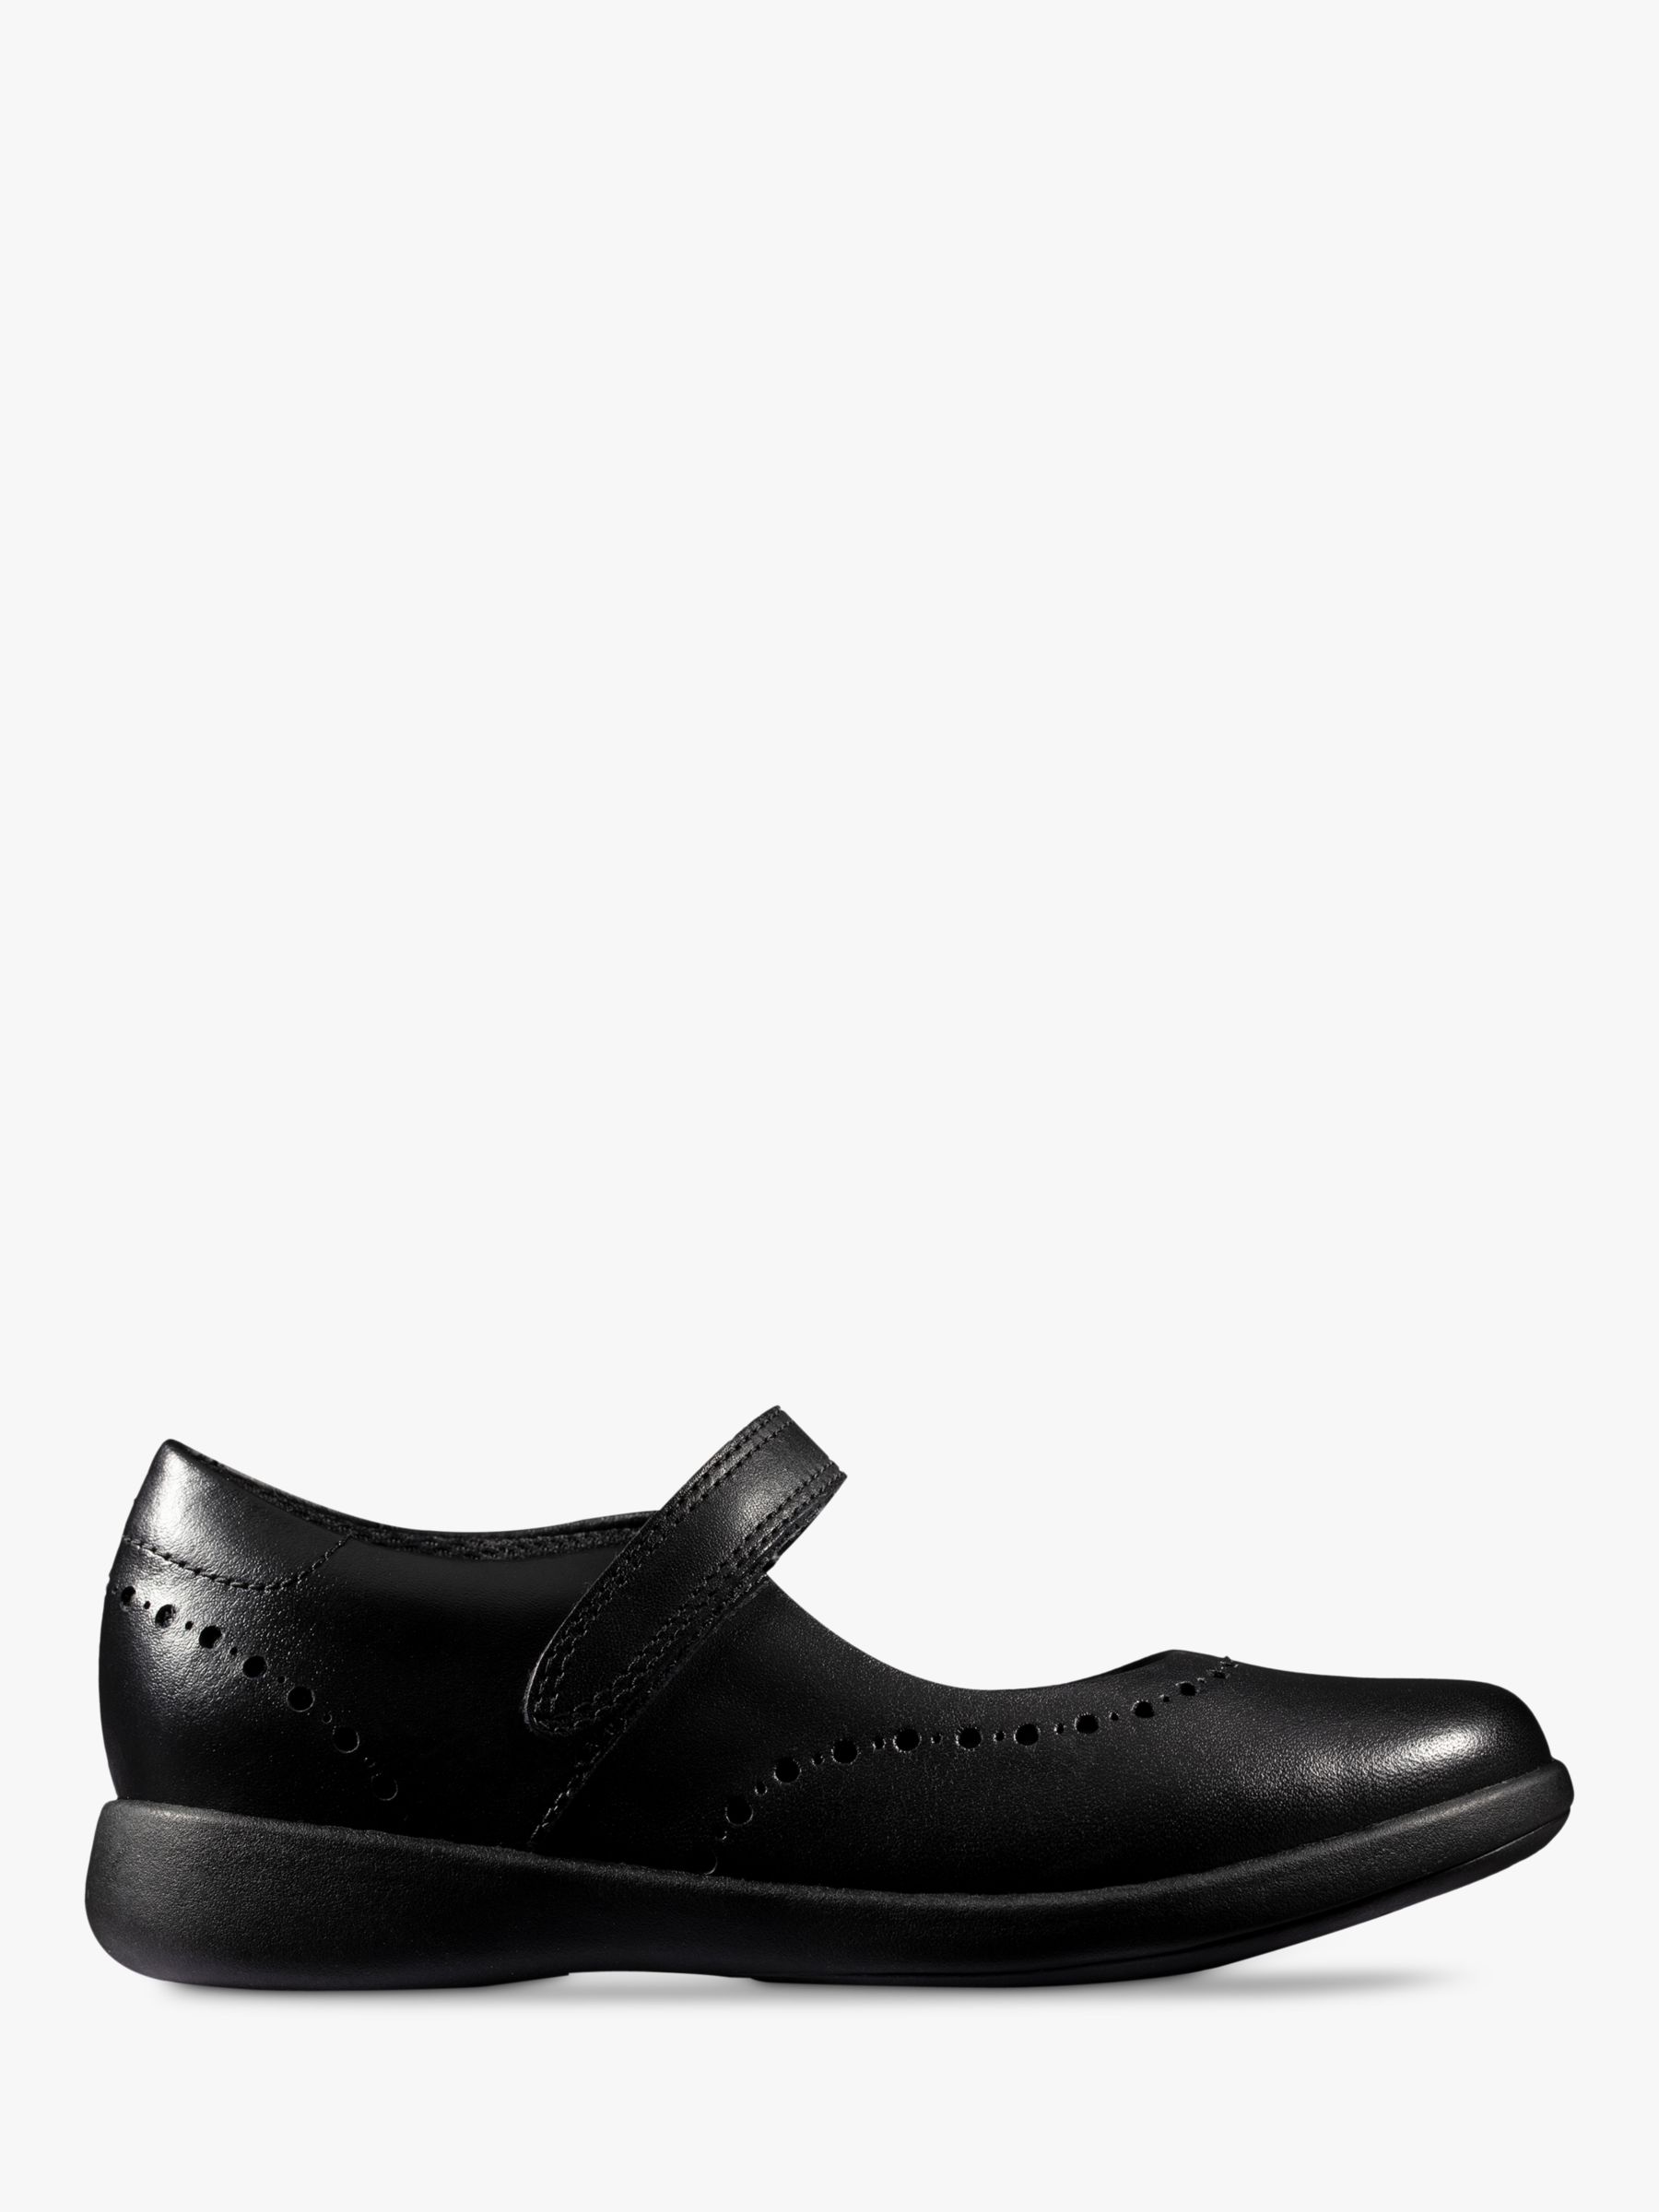 clarks black shoes